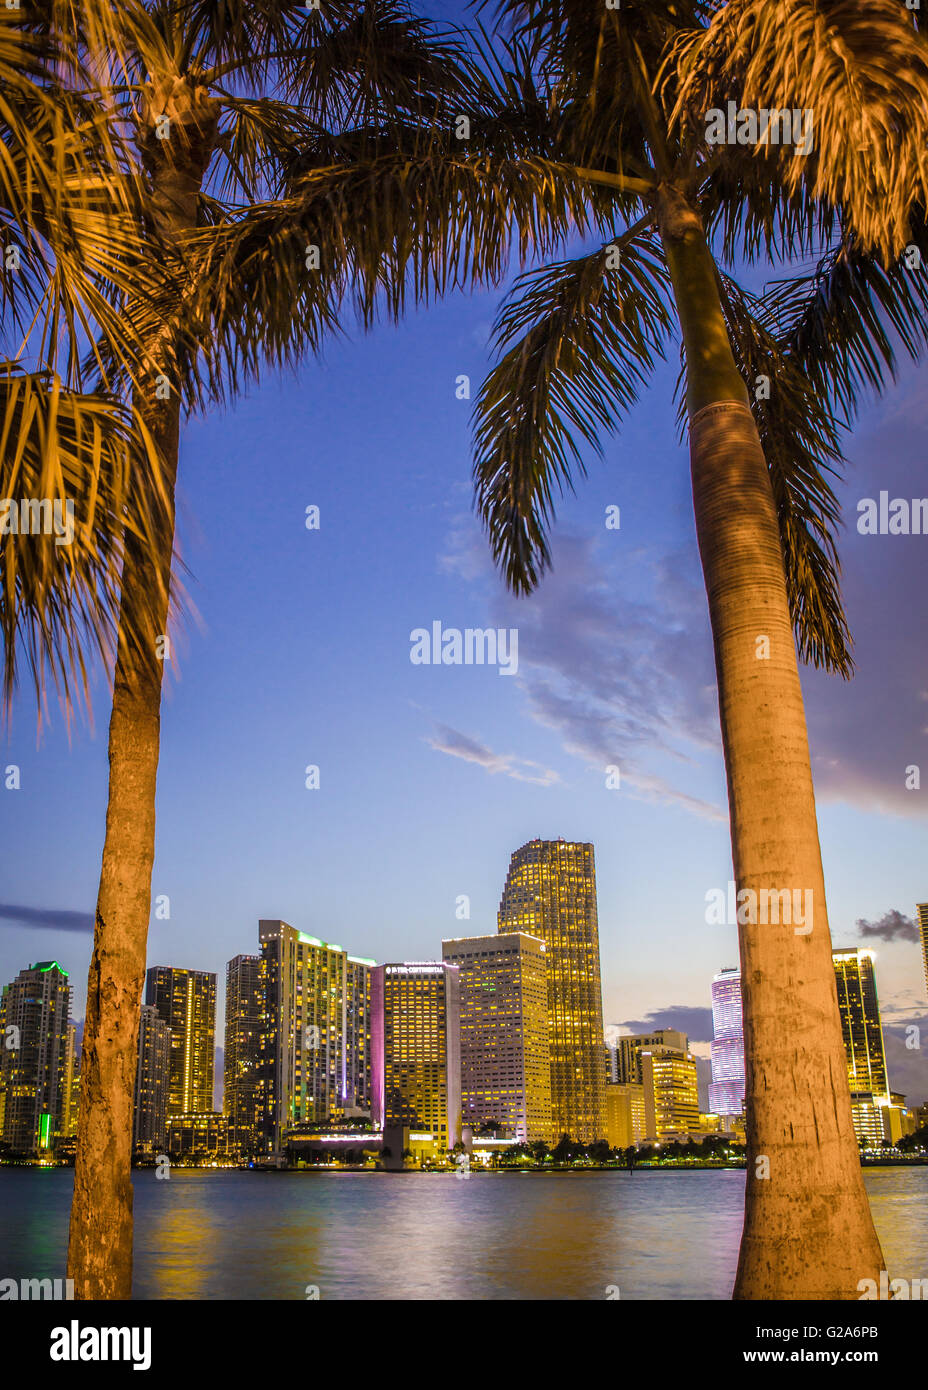 Blick auf schöne Miami Florida-Skyline bei Nacht durch Palmen gesehen Stockfoto